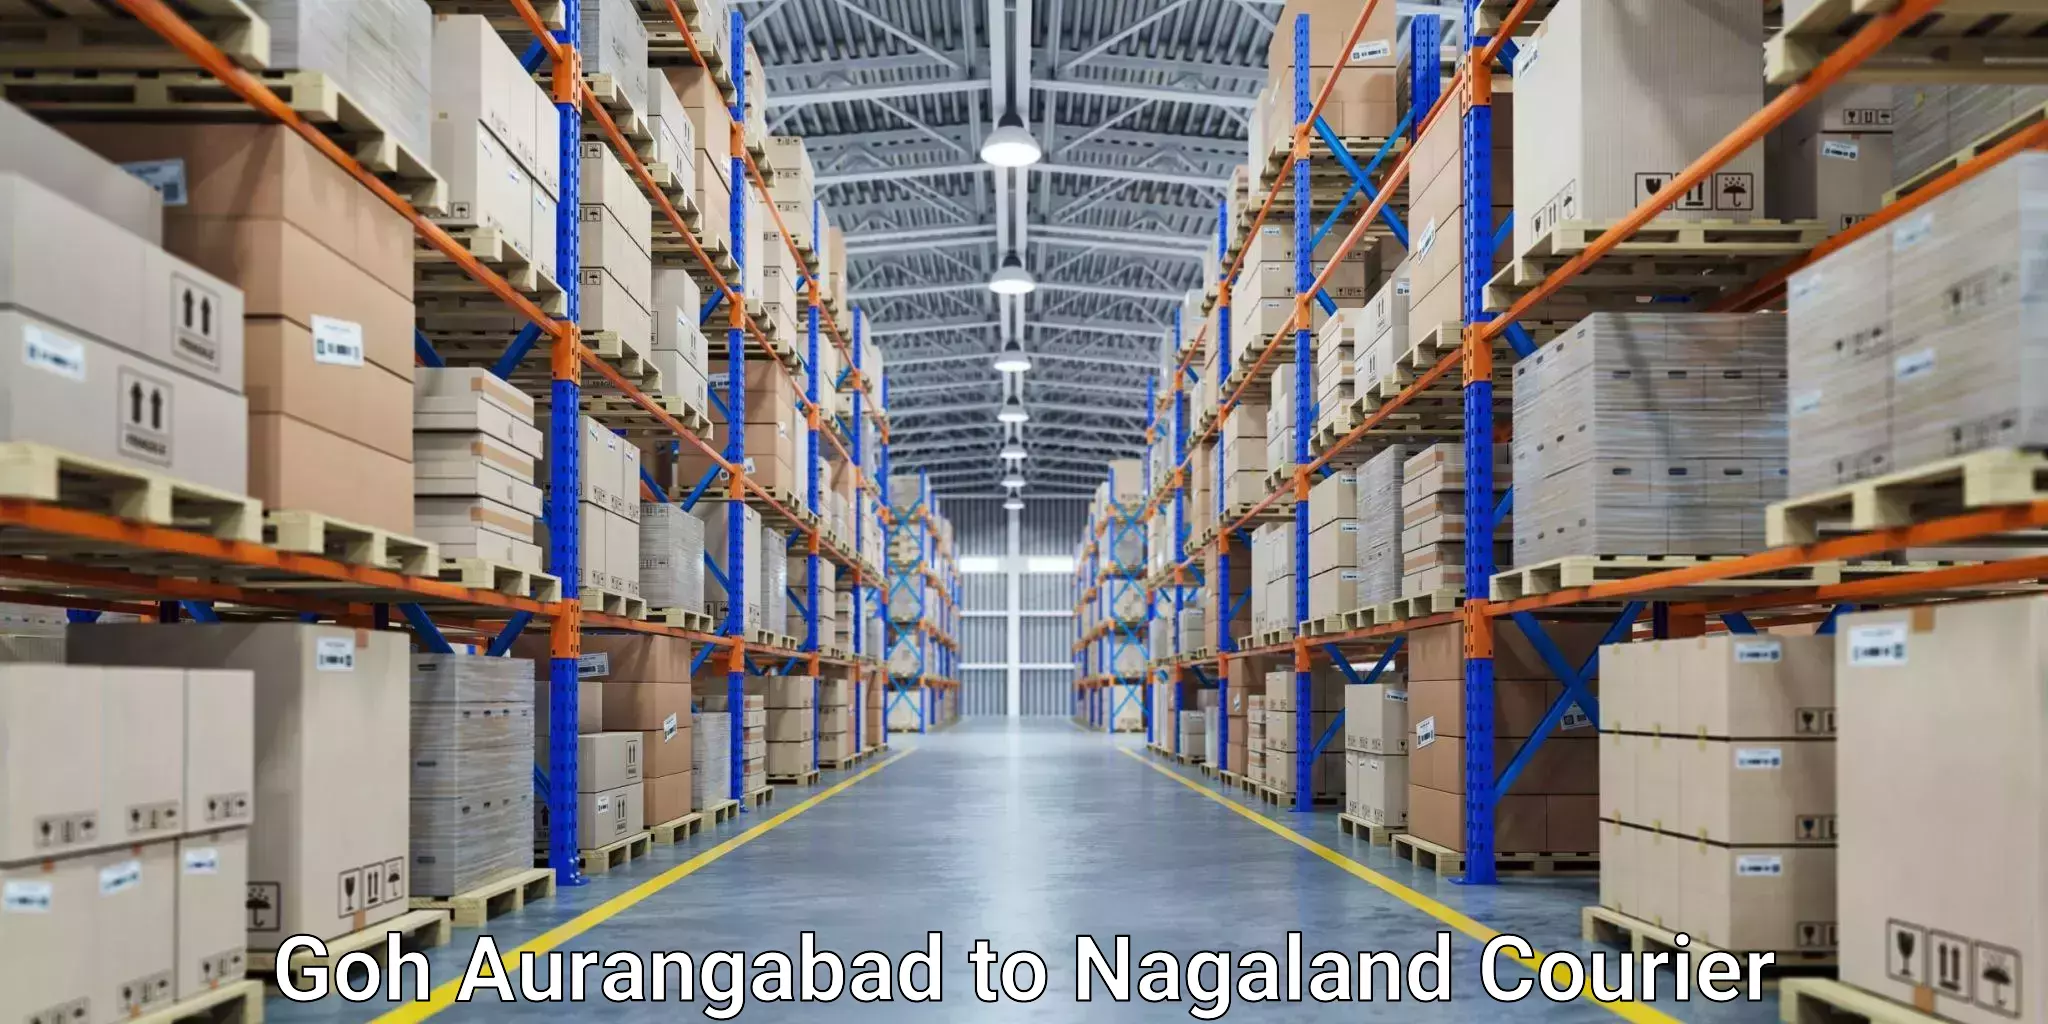 Premium courier solutions Goh Aurangabad to Nagaland